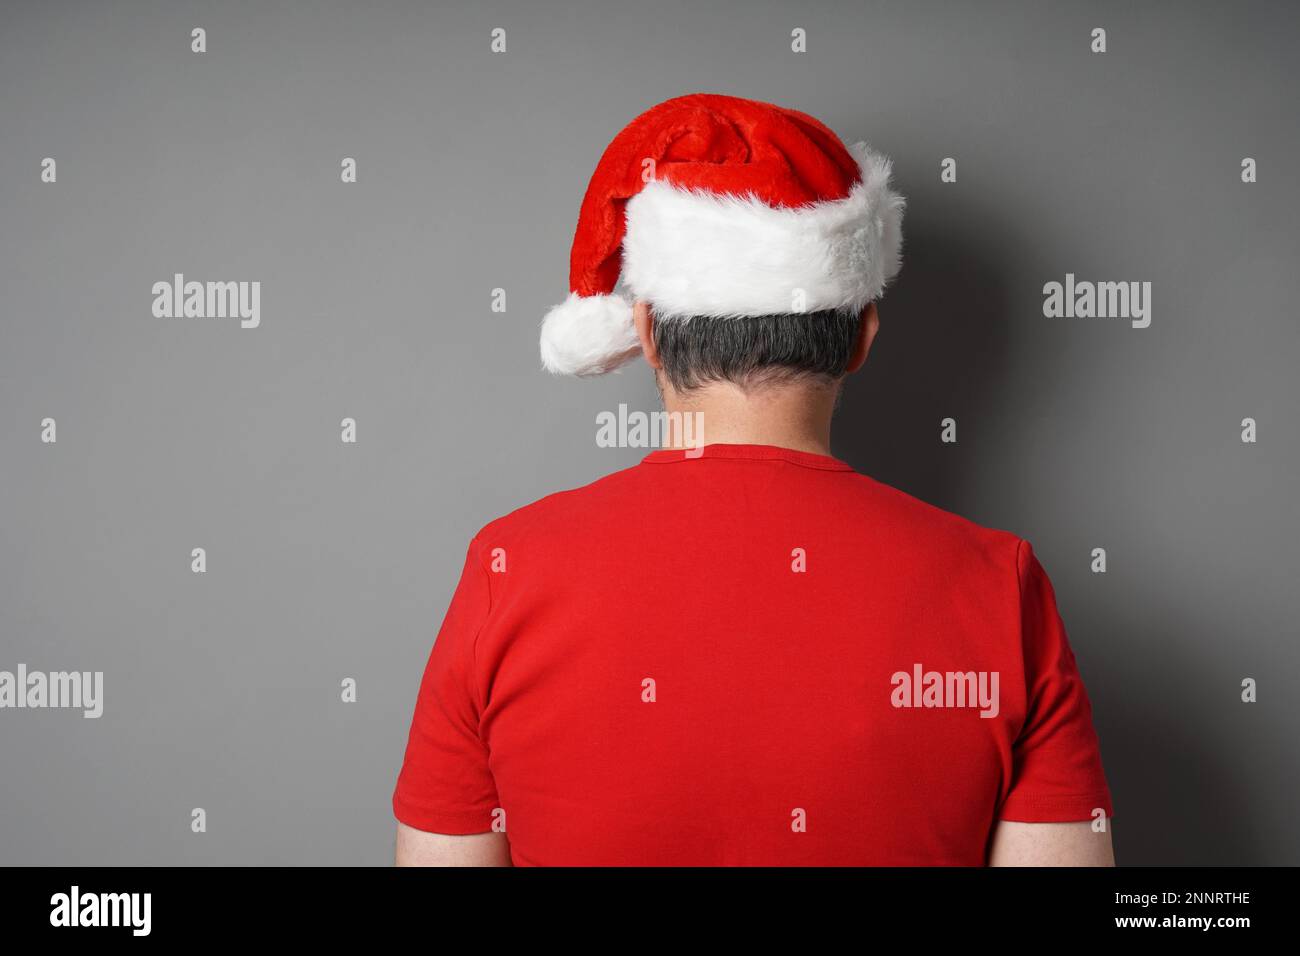 Ansicht der Rückseite des Mann, Santa Hat und Red-t-shirt gegen graue Wand Hintergrund mit Kopie Raum - echte Menschen Weihnachten Konzept Stockfoto